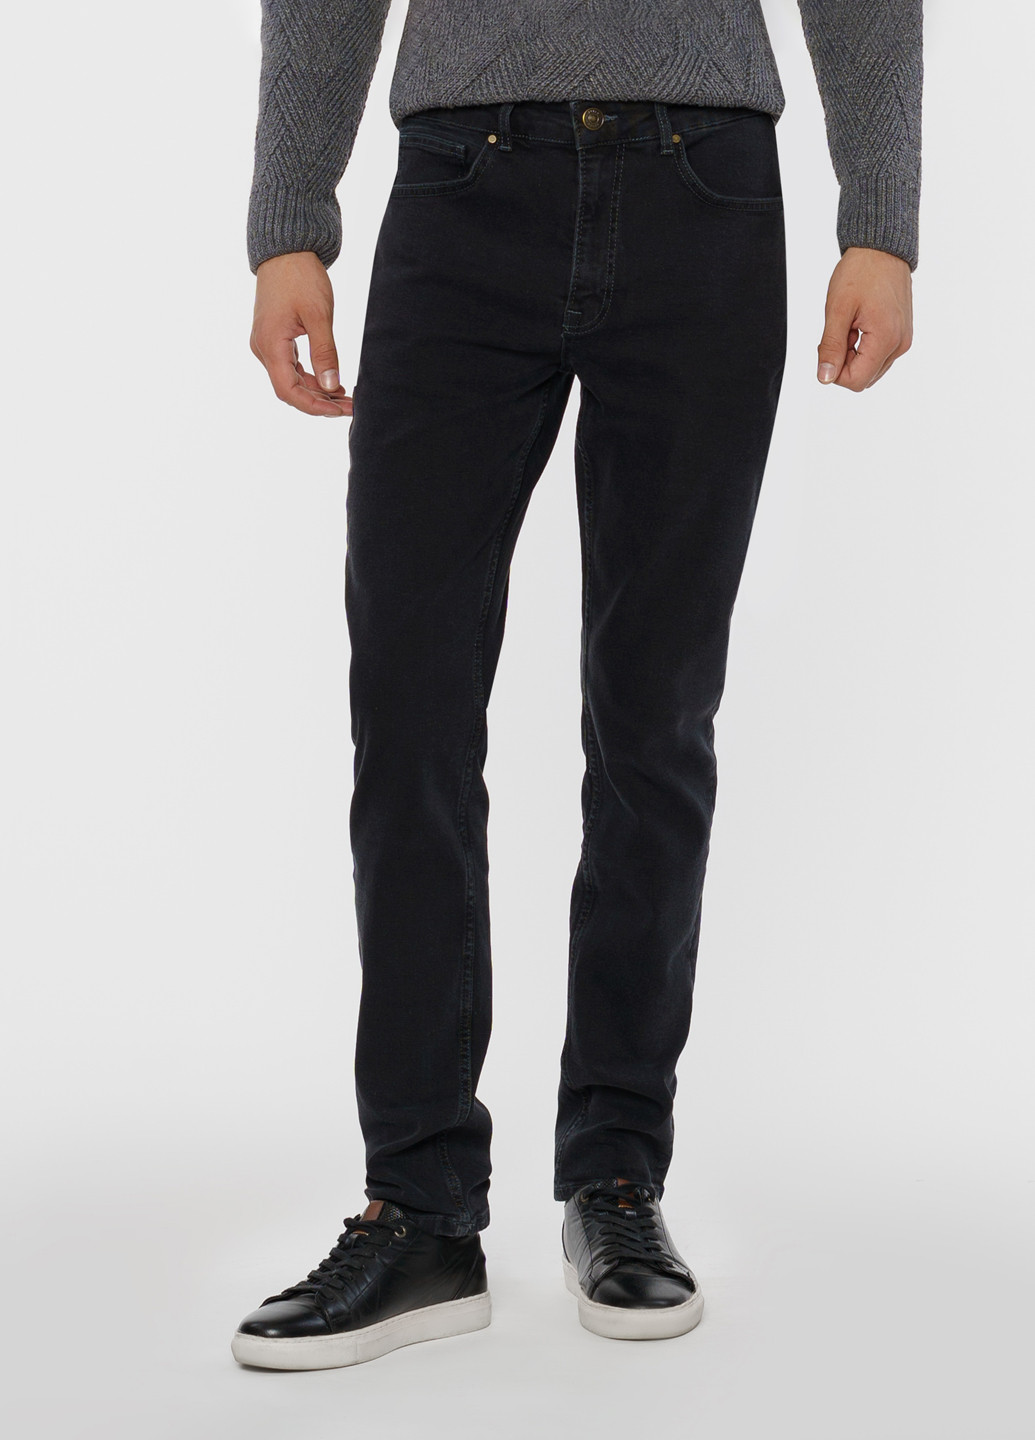 Черные зимние джинсы мужские SLIM FIT Arber